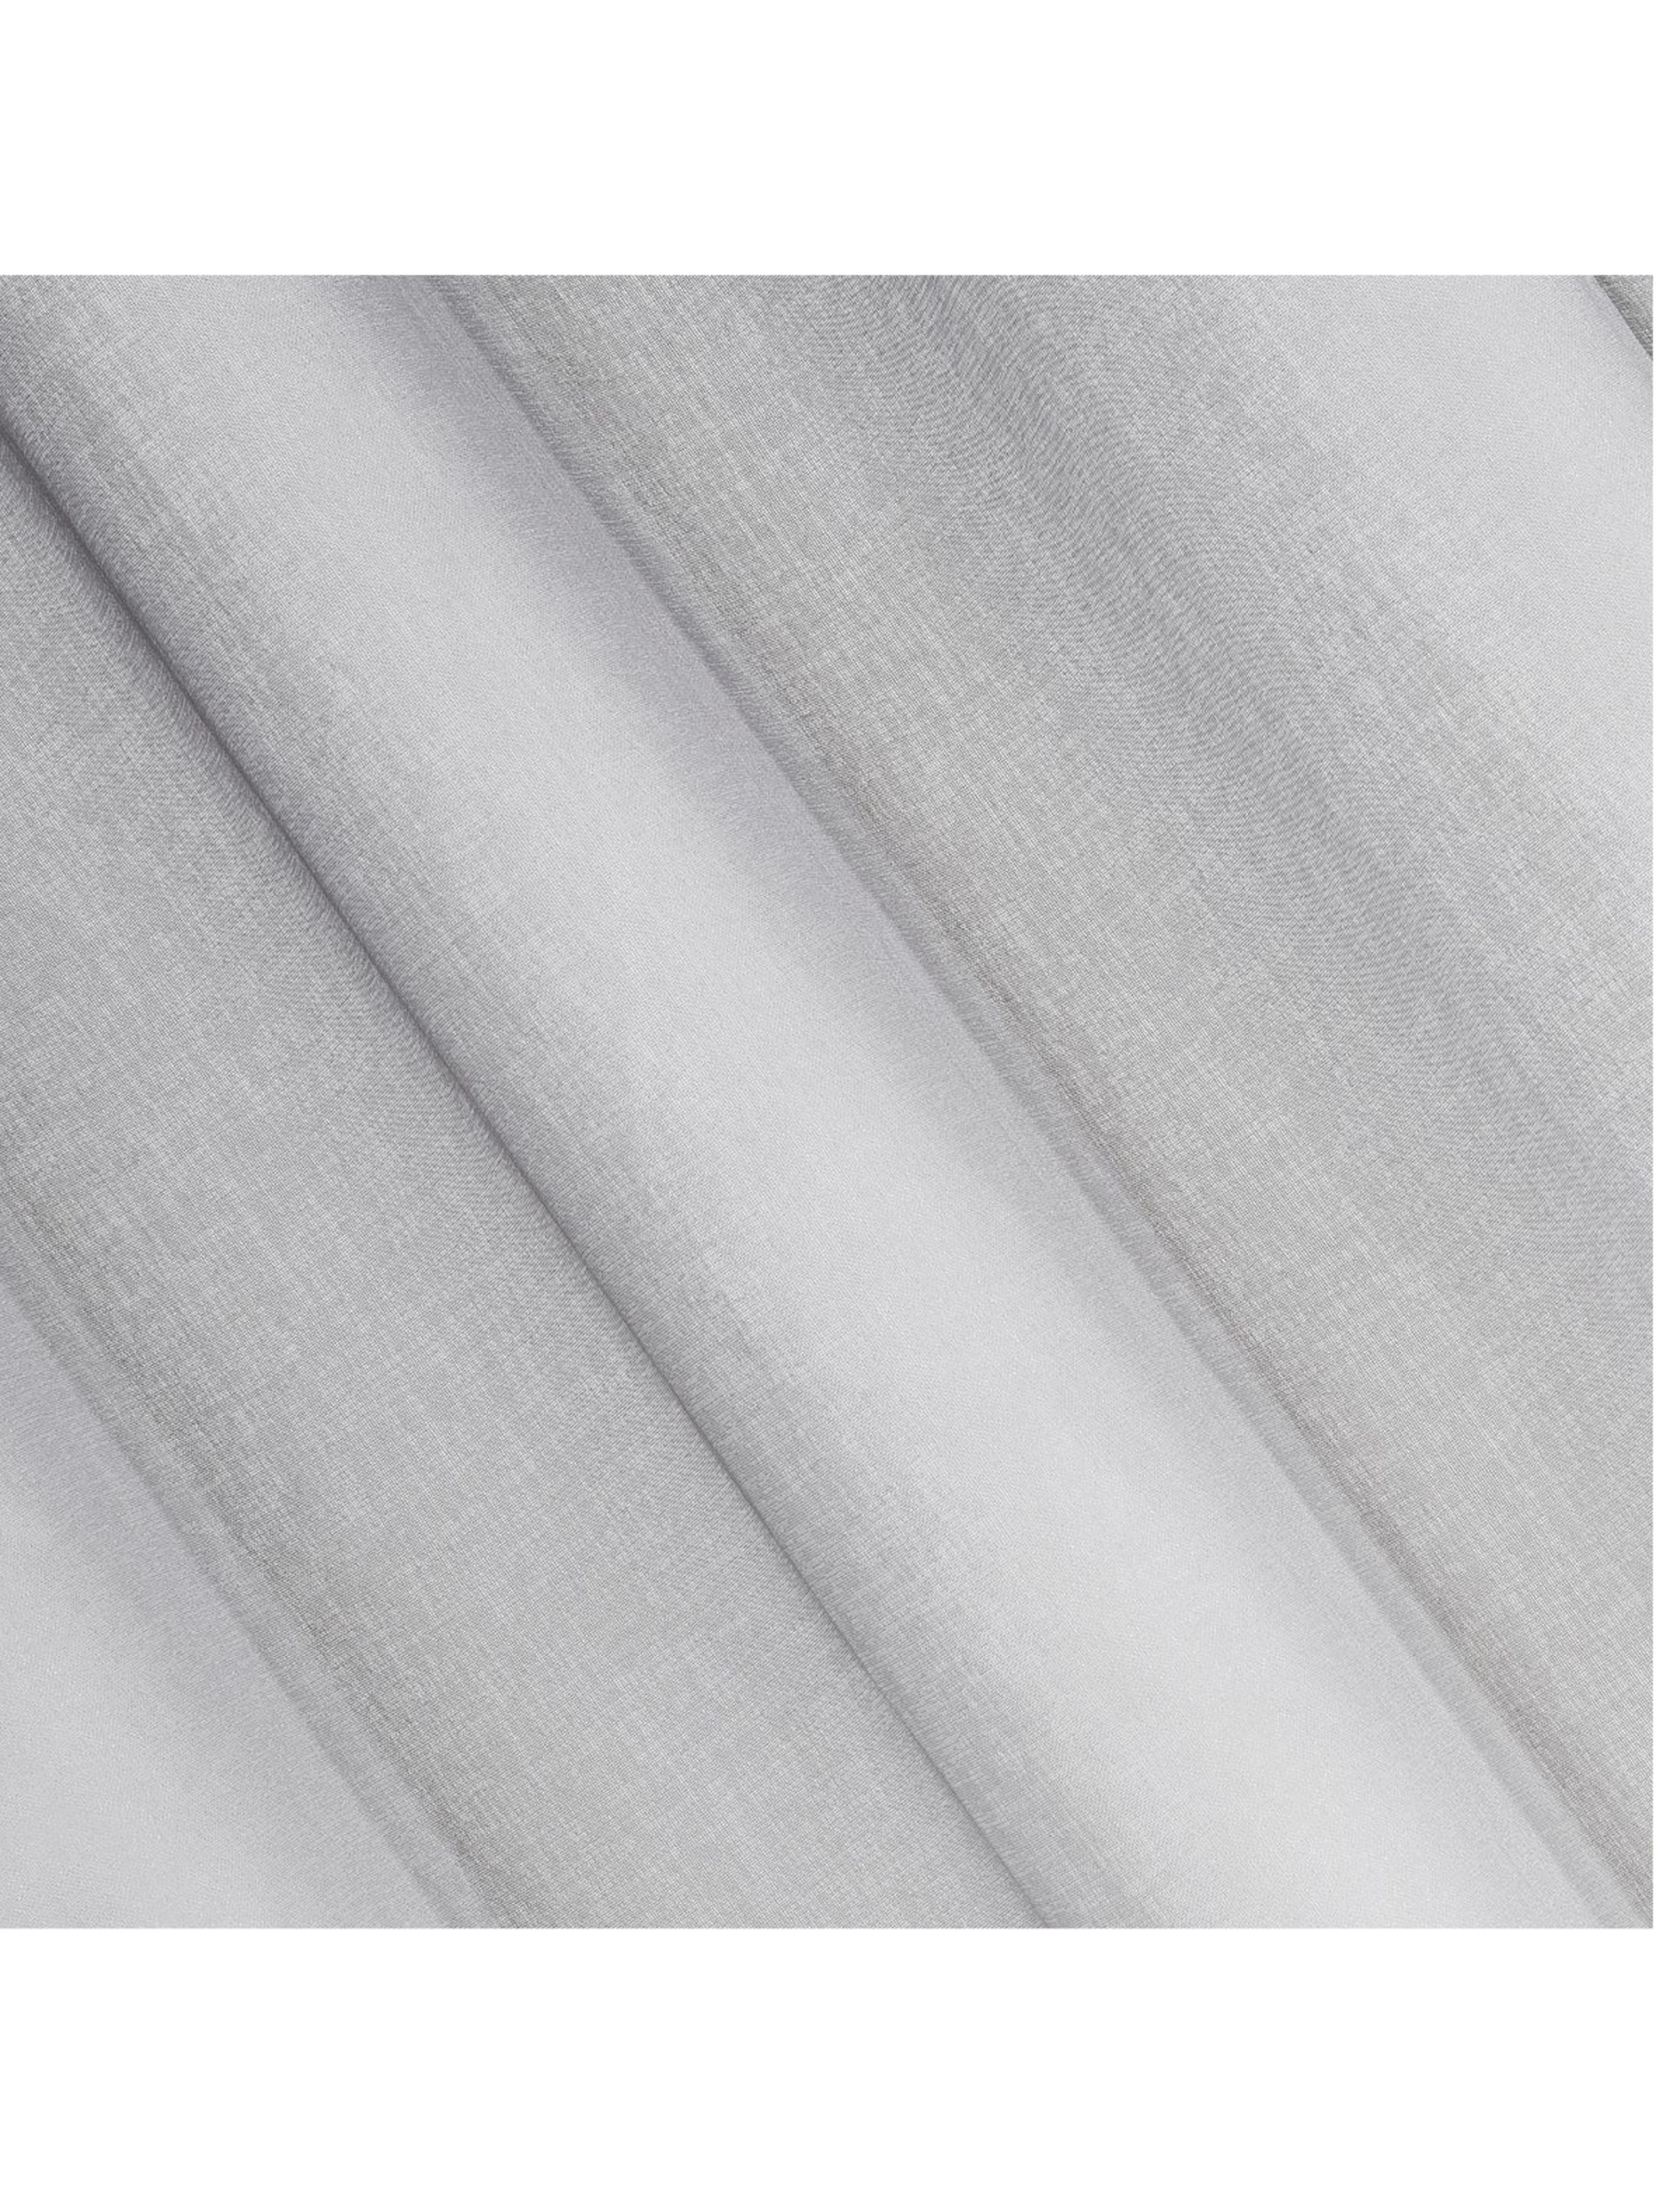 Biała zasłona 140x250 cm z efektem cieniowania